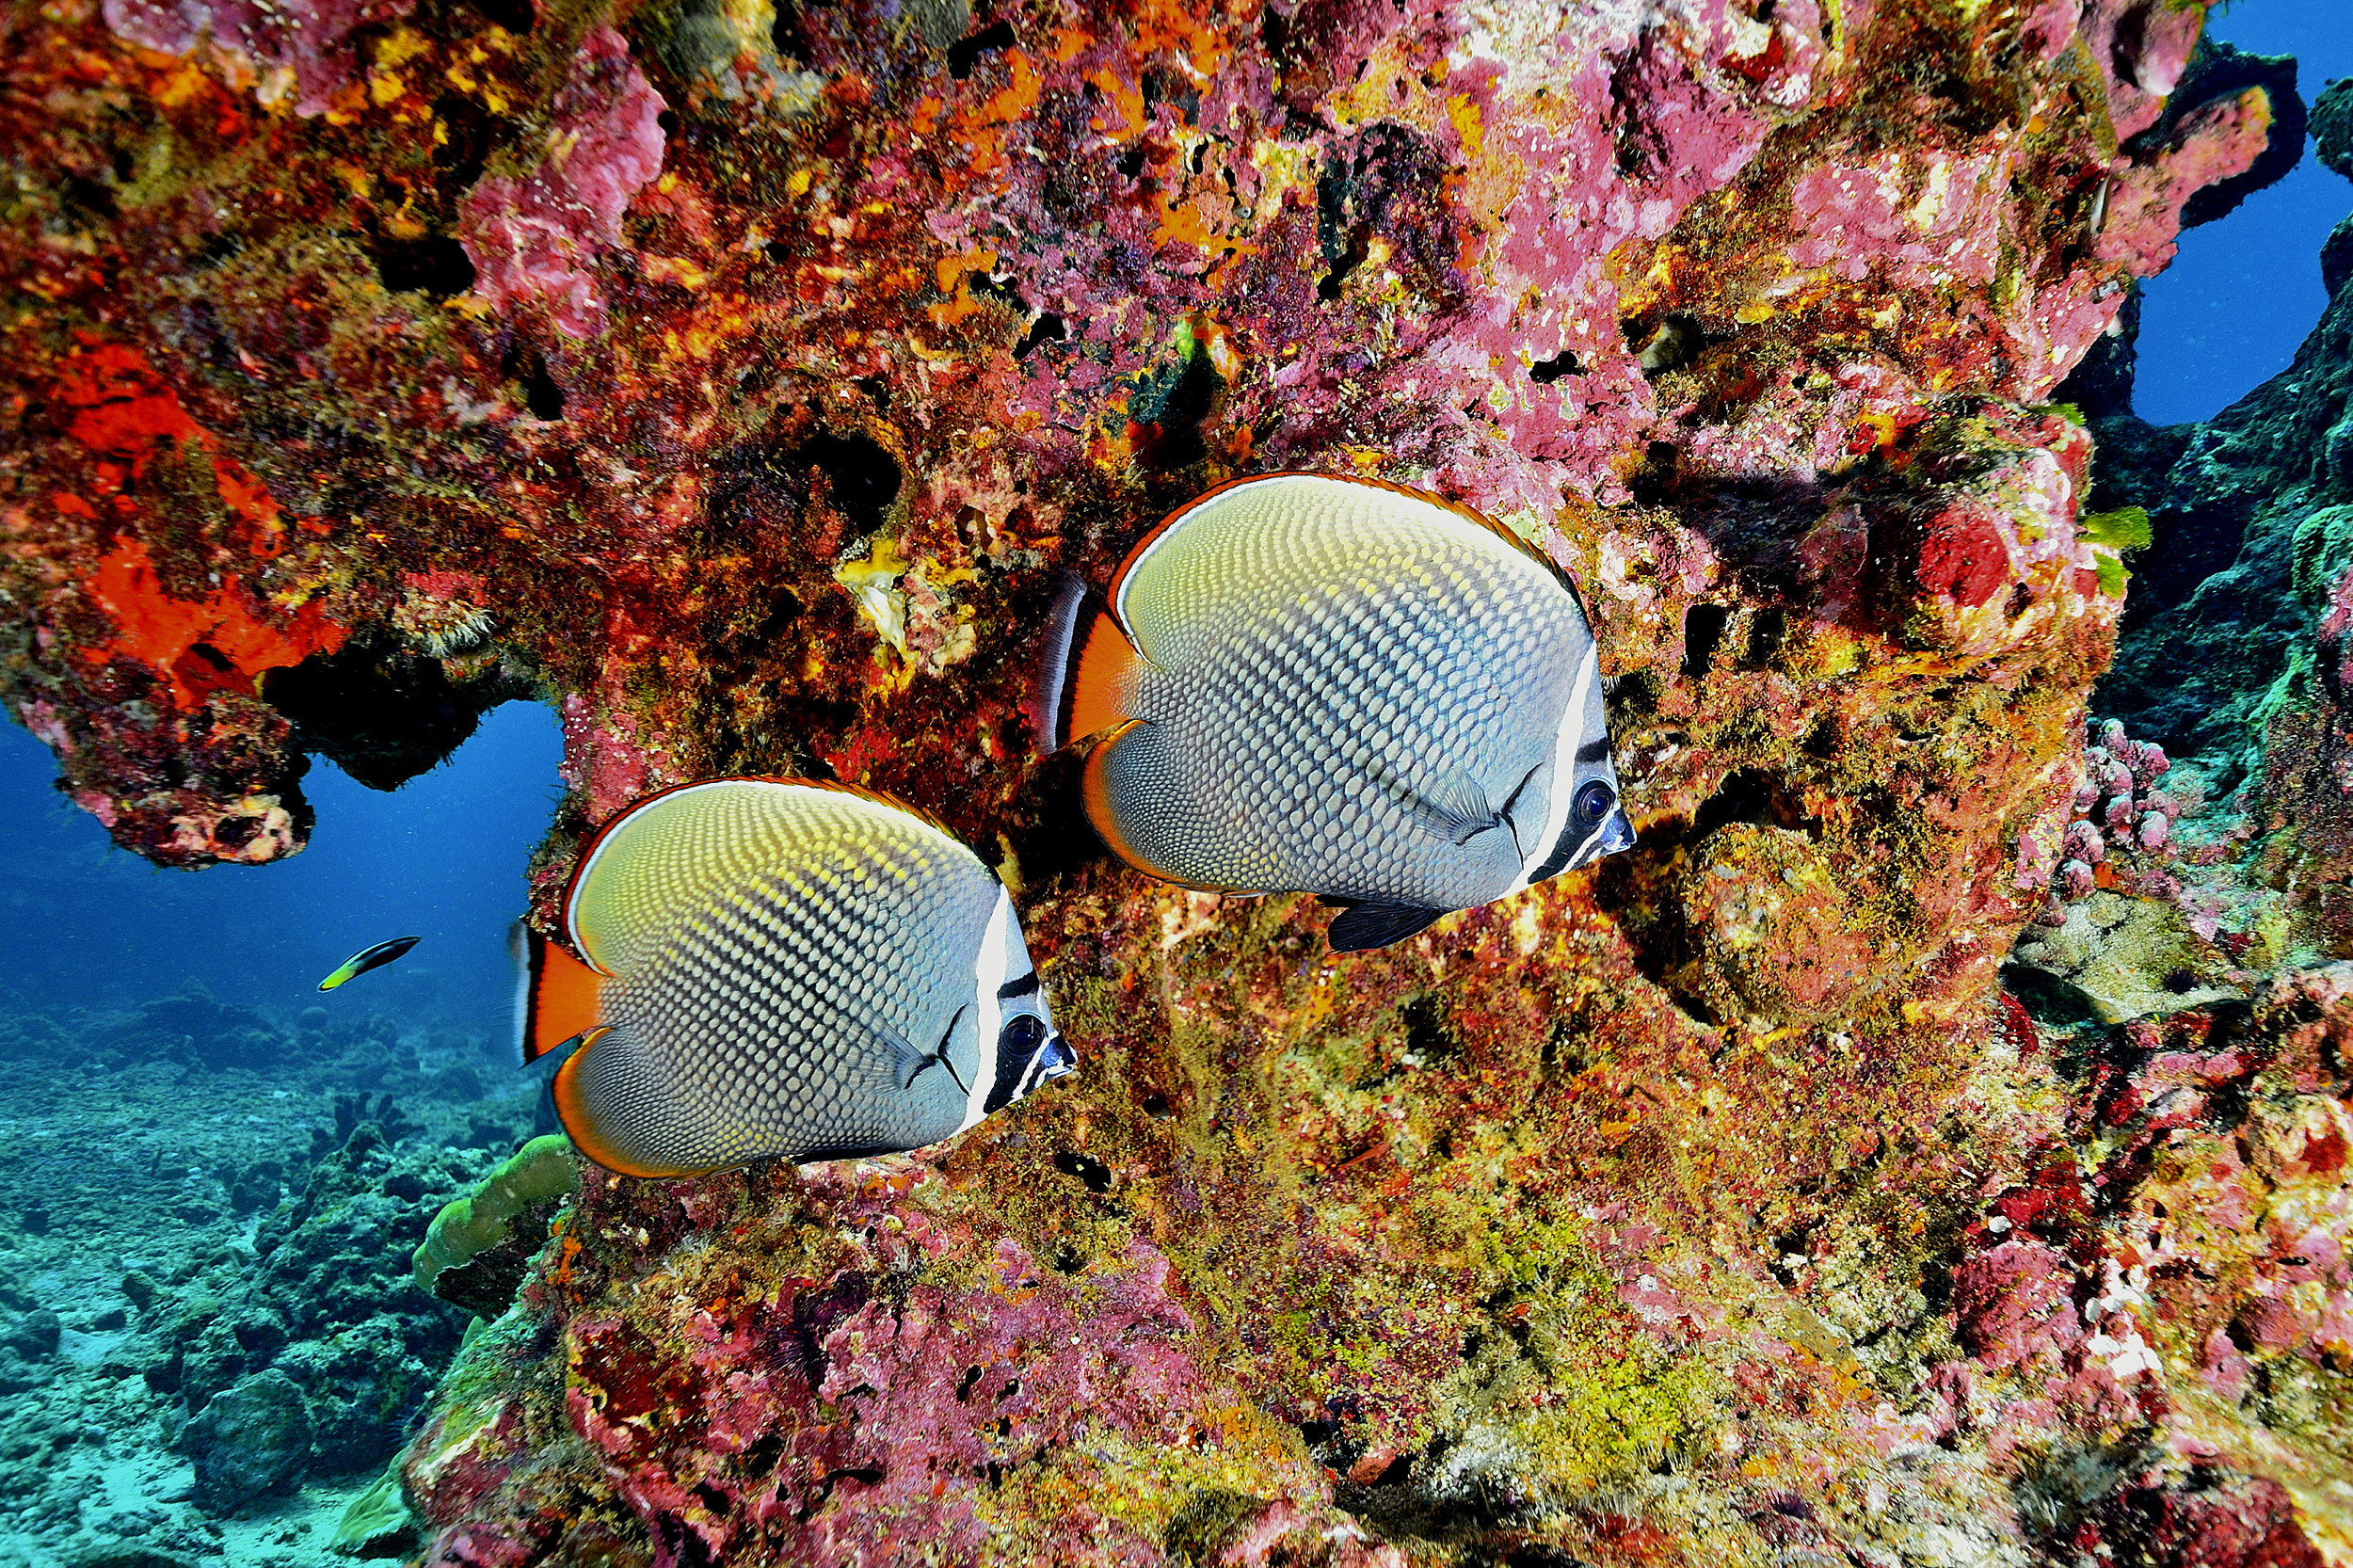 Fish and coral at the Similan Islands, Thailand